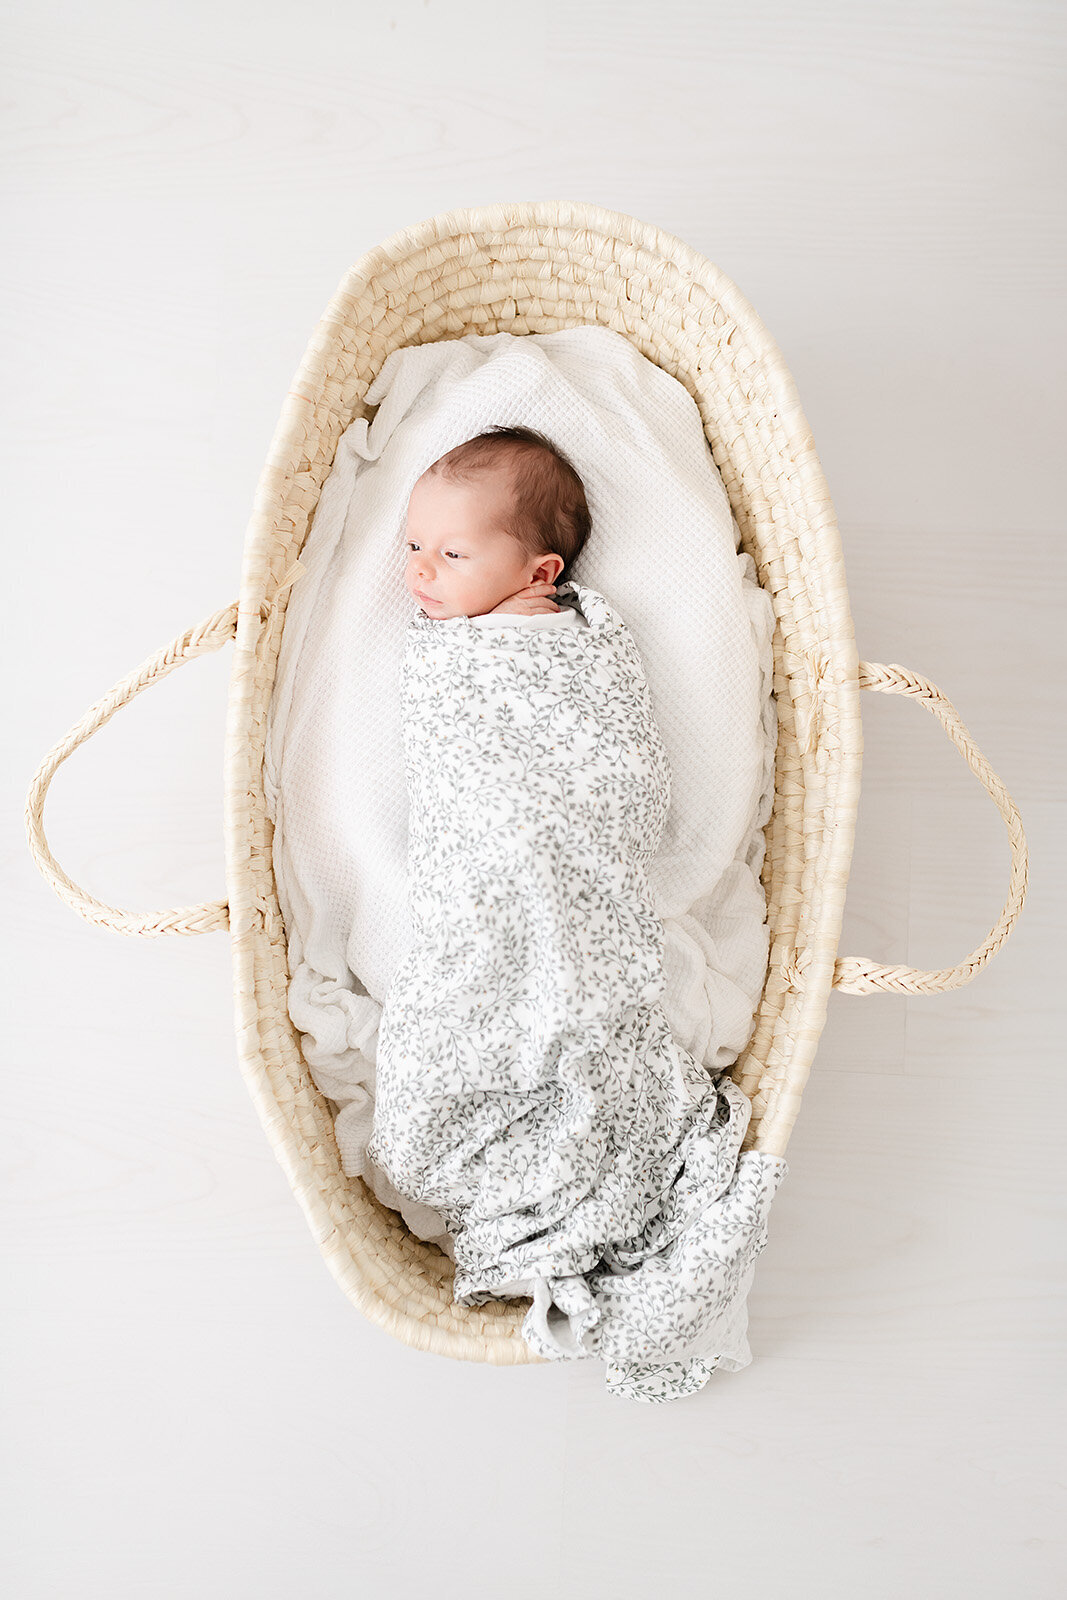 destin-newborn-photographer-30